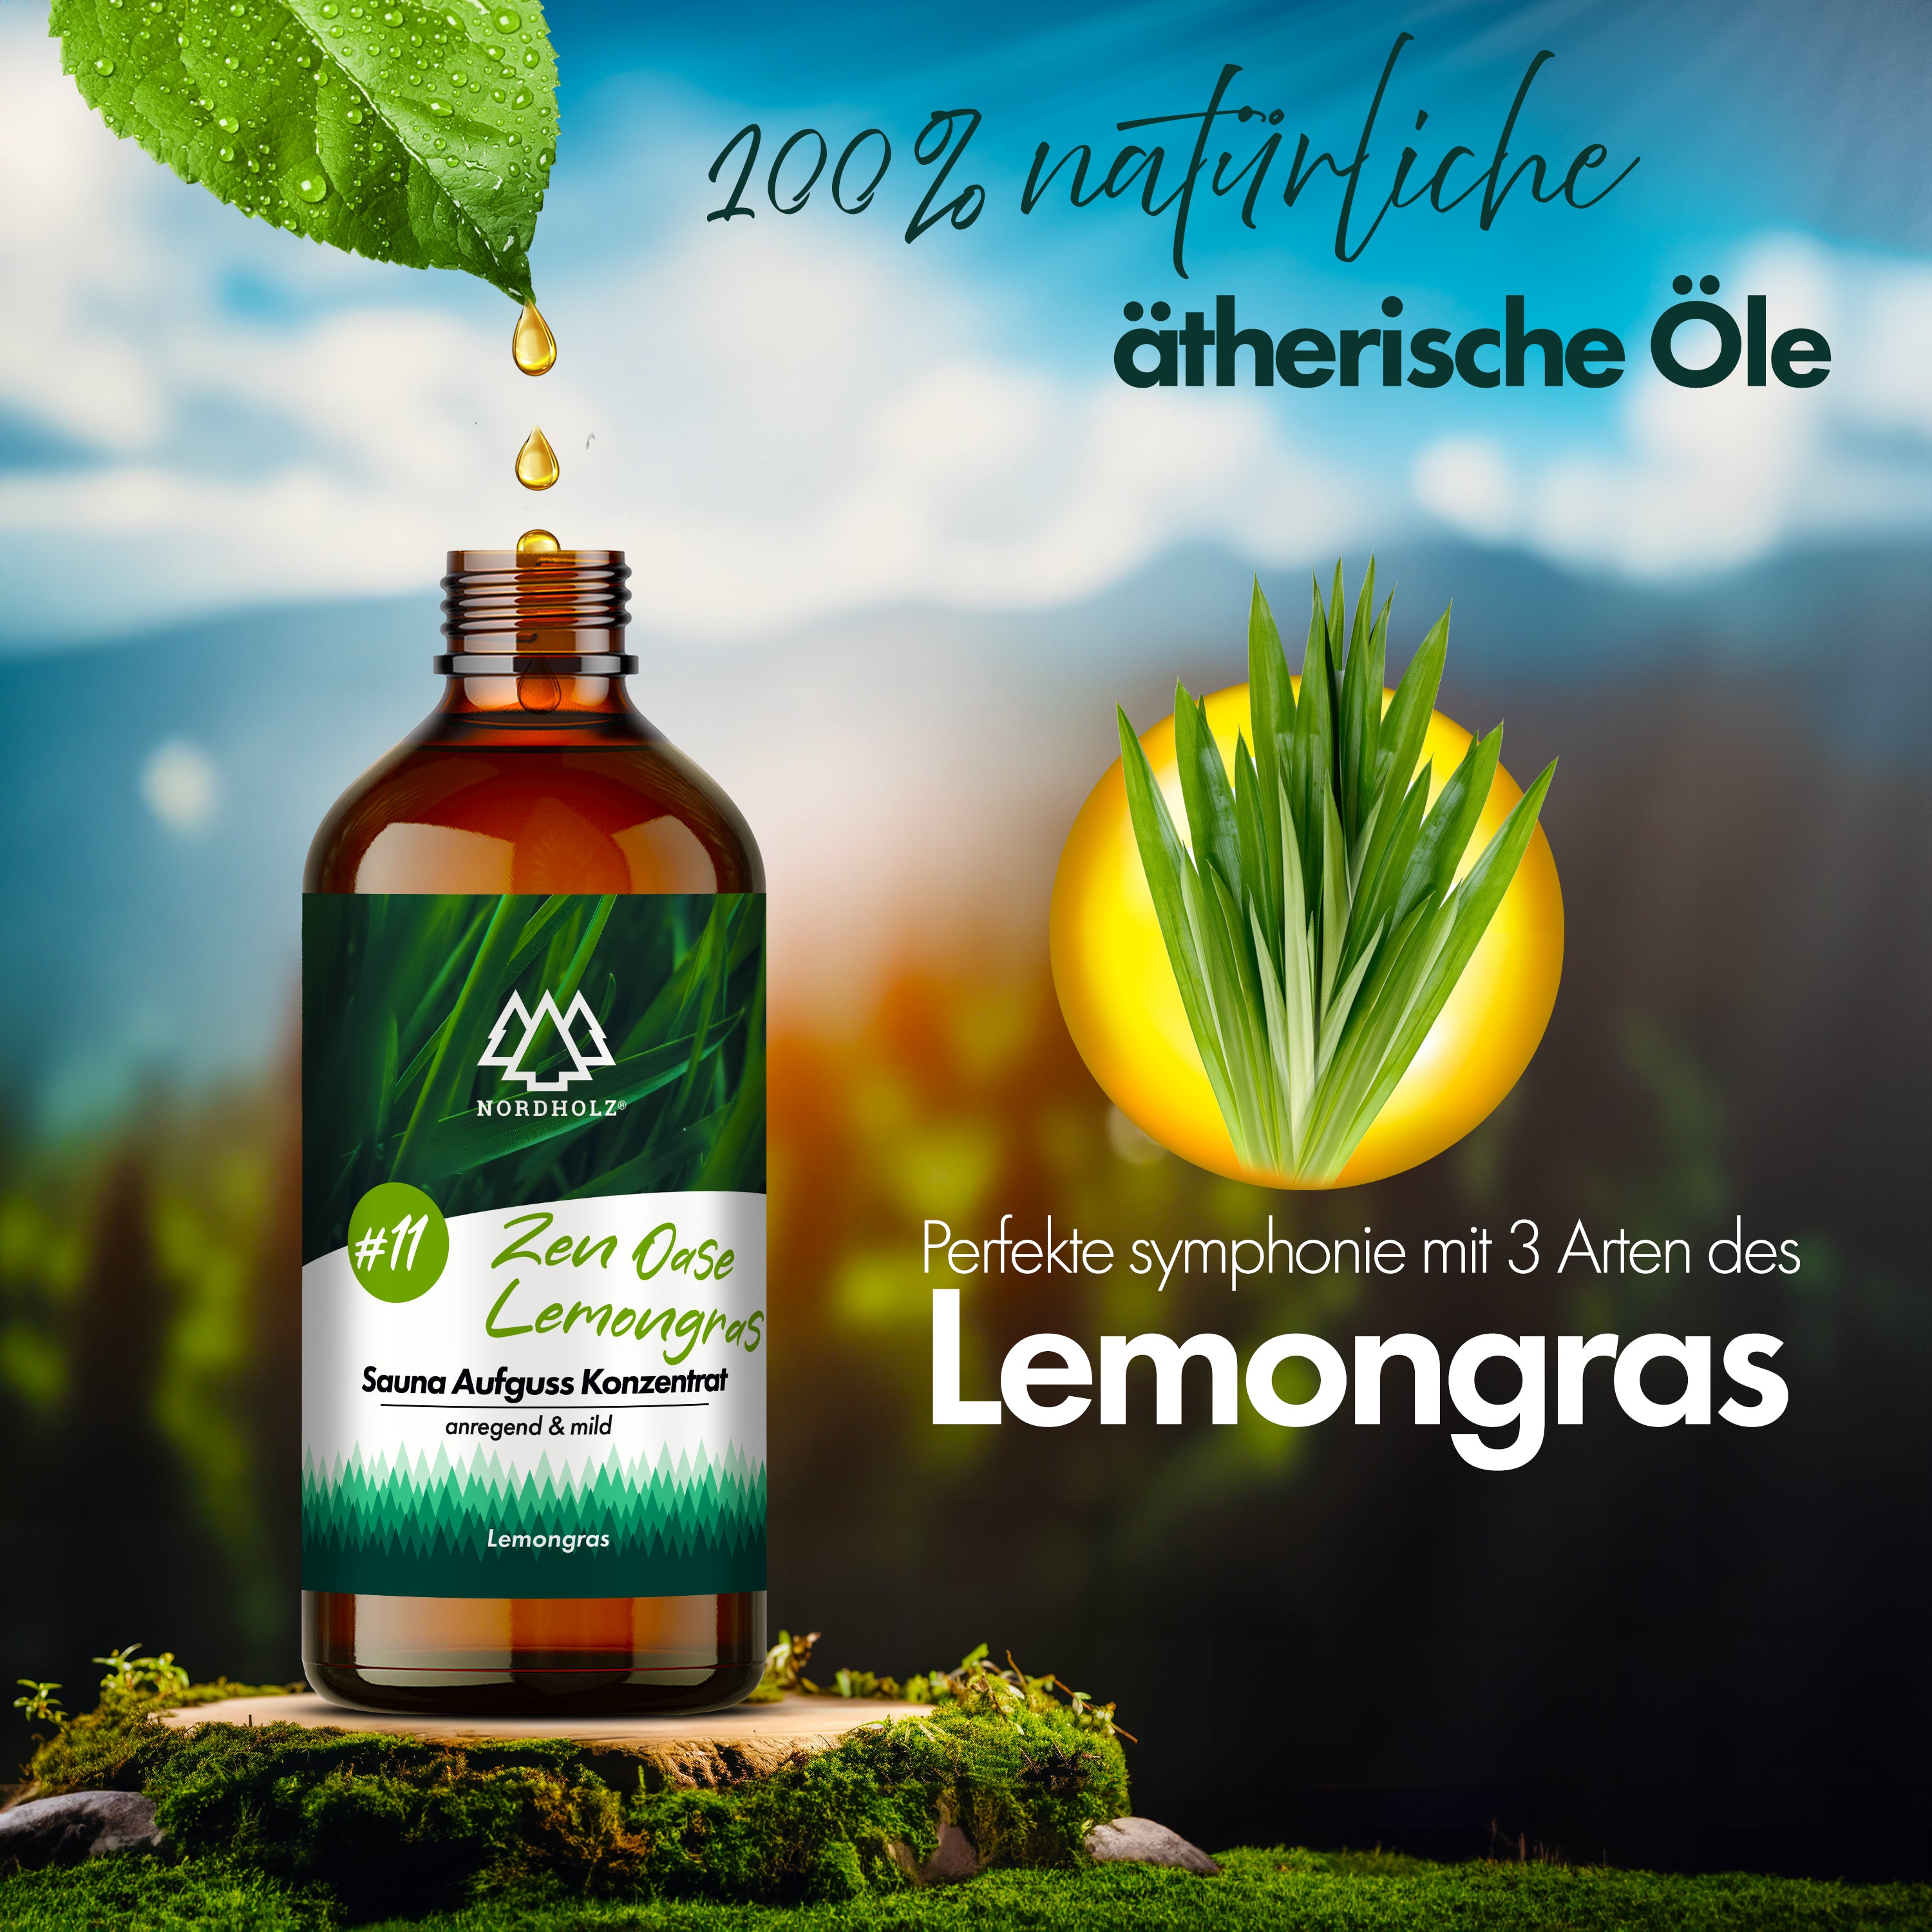 Sauna Aufguss Konzentrat #11 Zen-Oase Lemongras